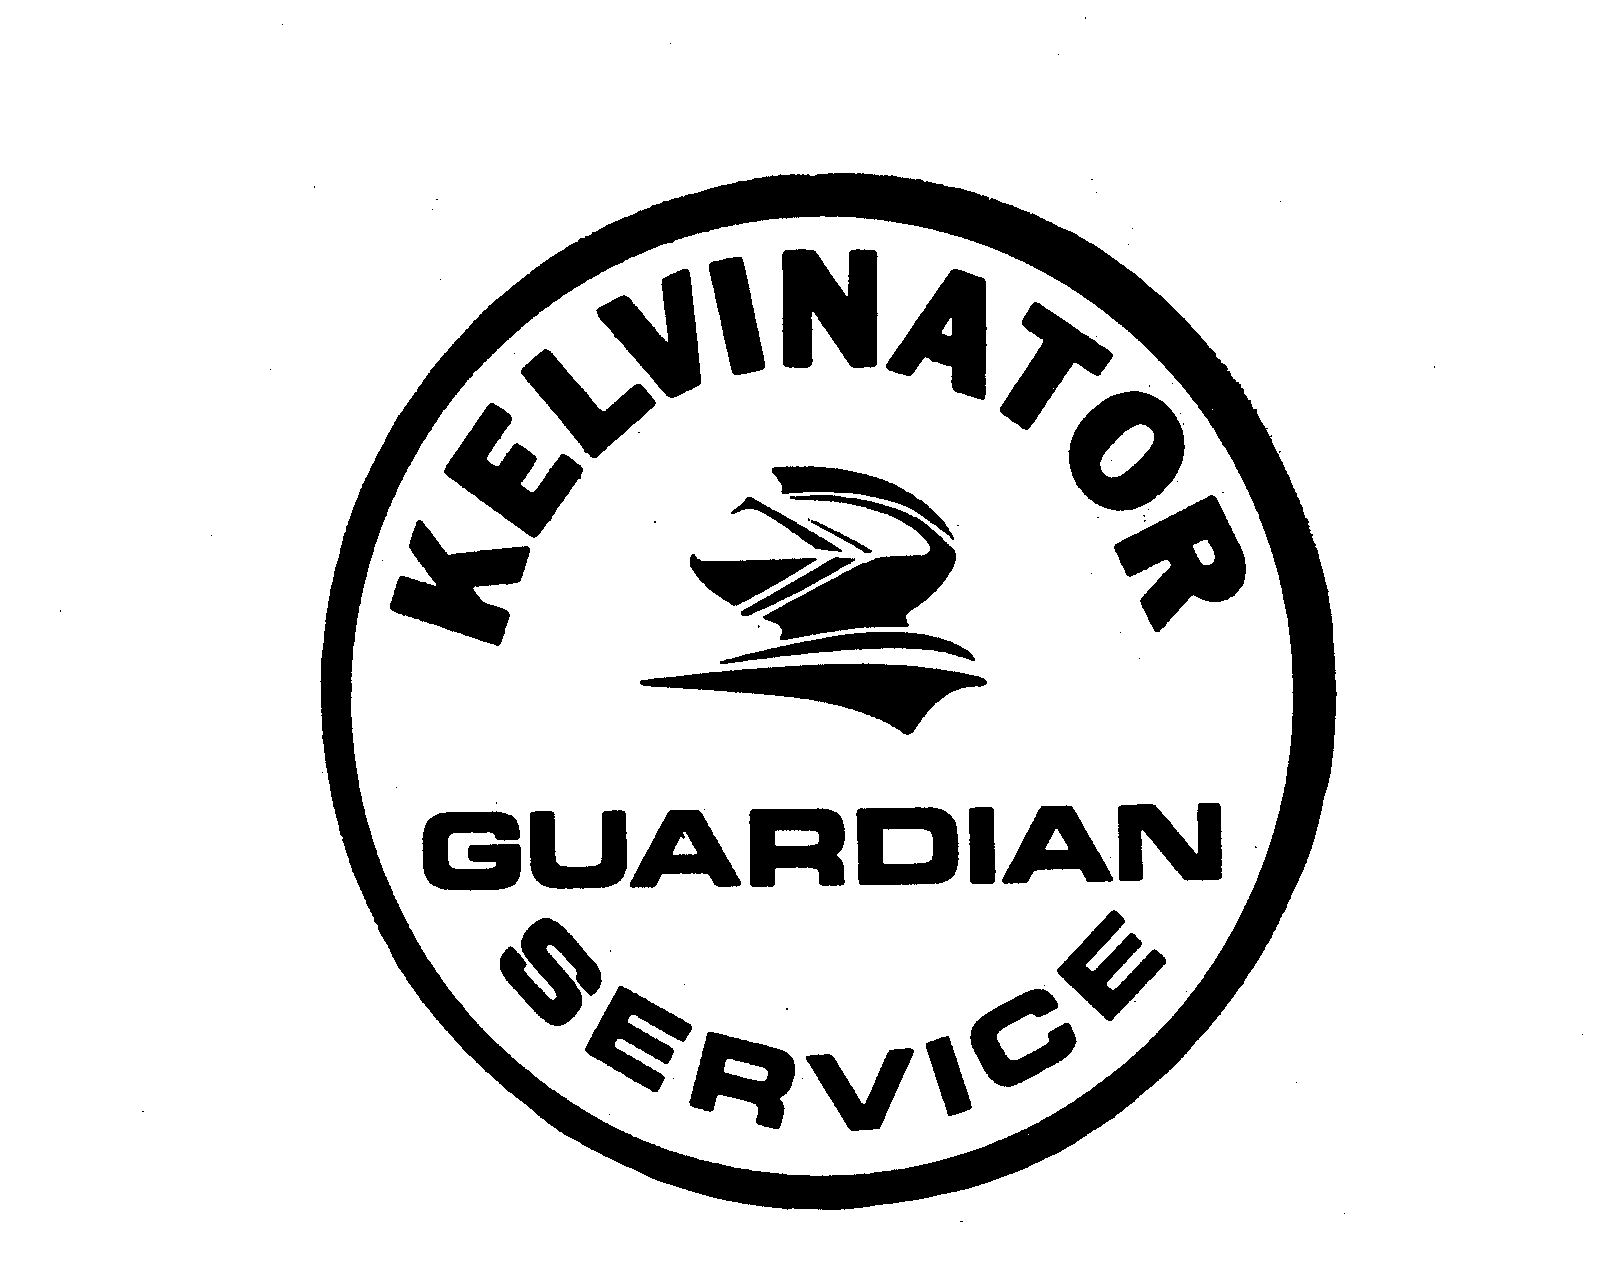  KELVINATOR GUARDIAN SERVICE